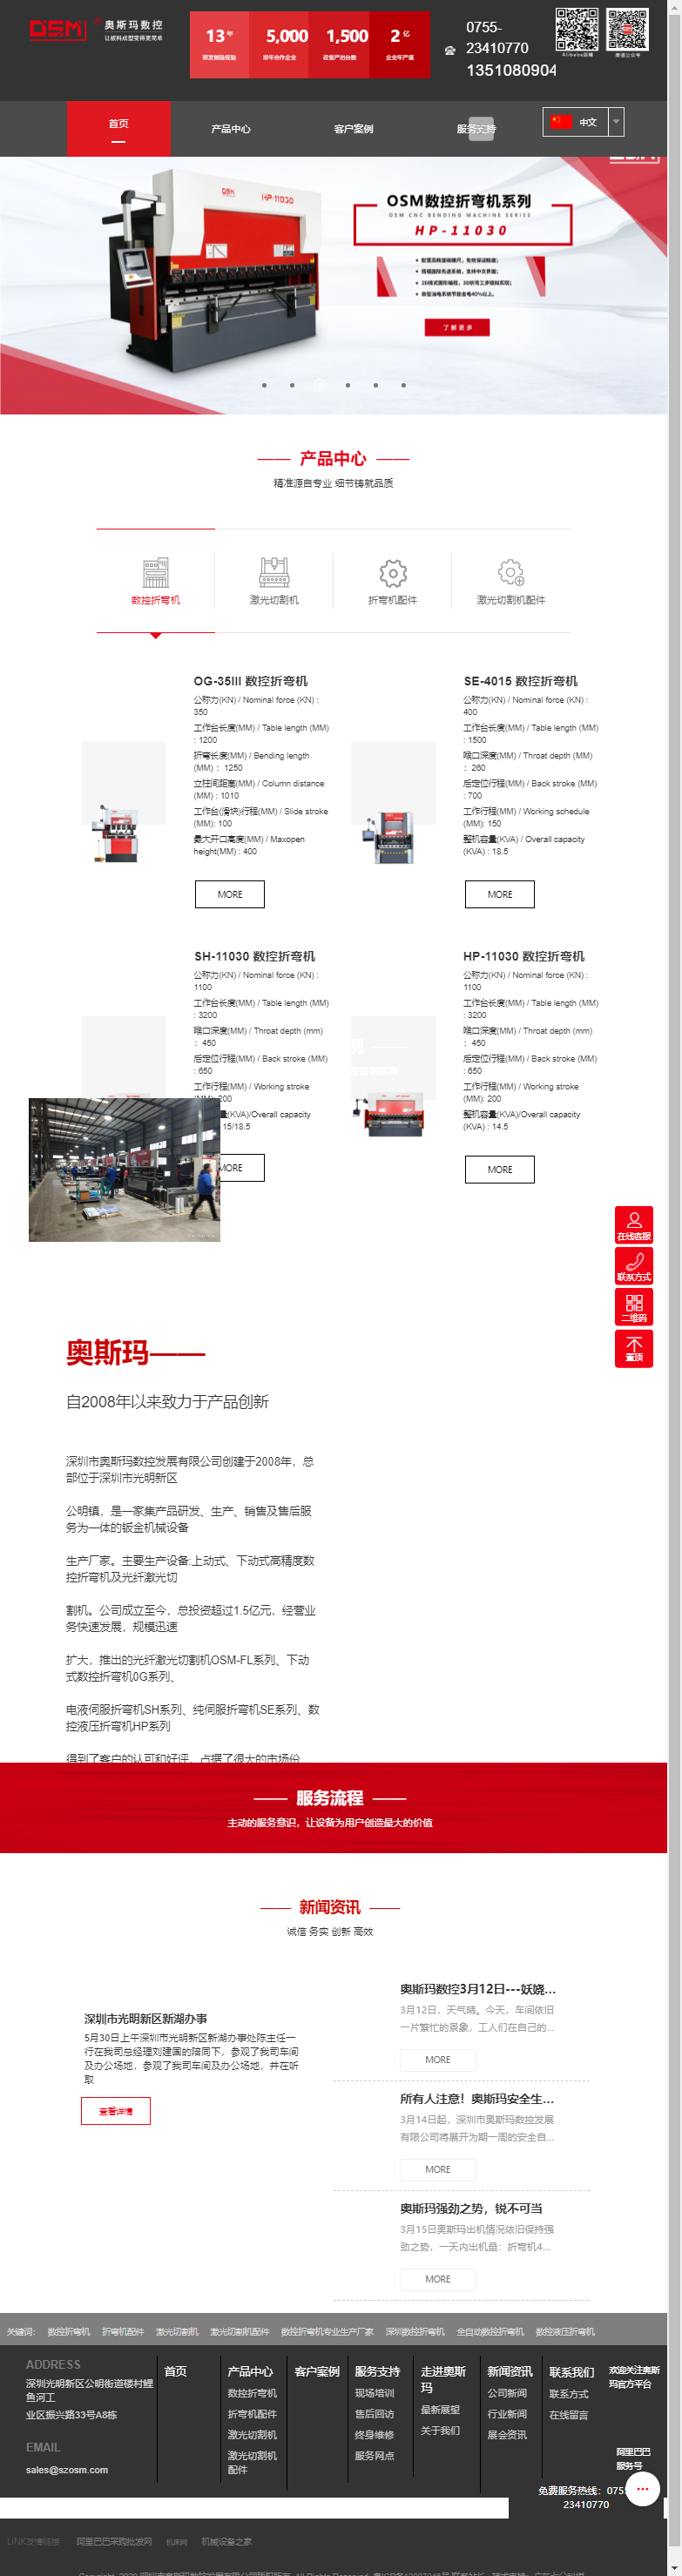 深圳市奥斯玛数控发展有限公司网站案例